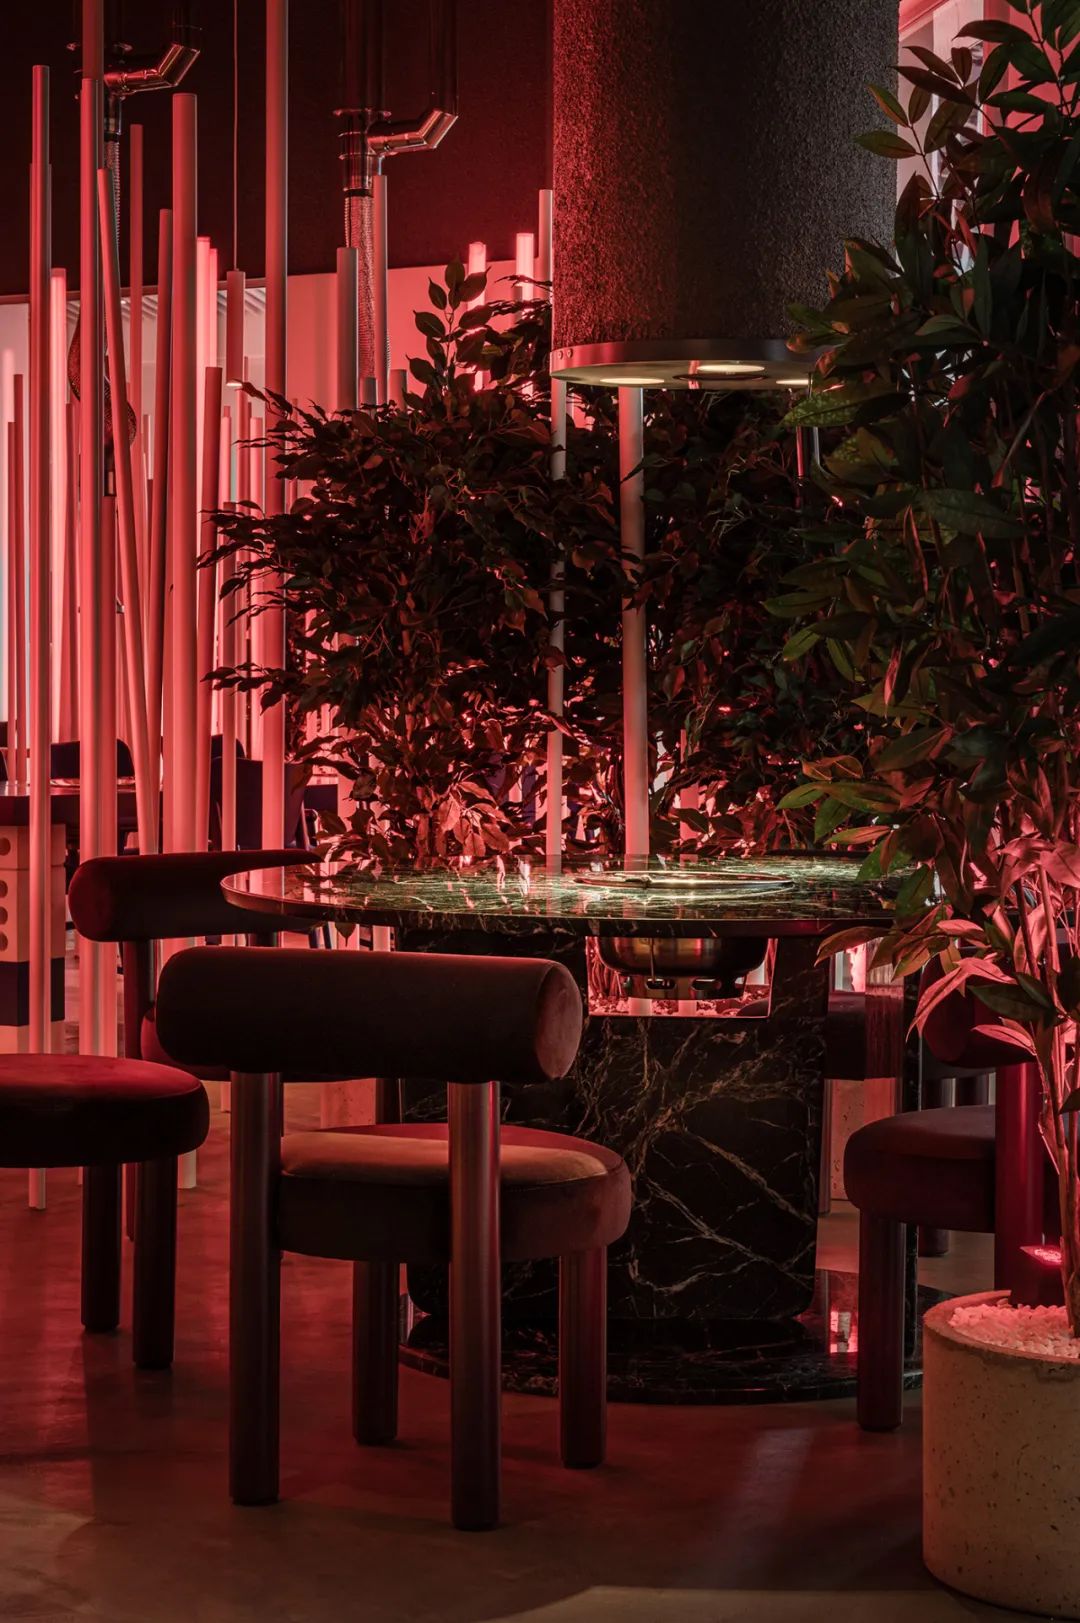 硅酸盐砖、霓虹灯标志、大理石,后现代硬核餐厅,随州灯光设计拍摄案例 | Kimchi韩式餐厅室内设计